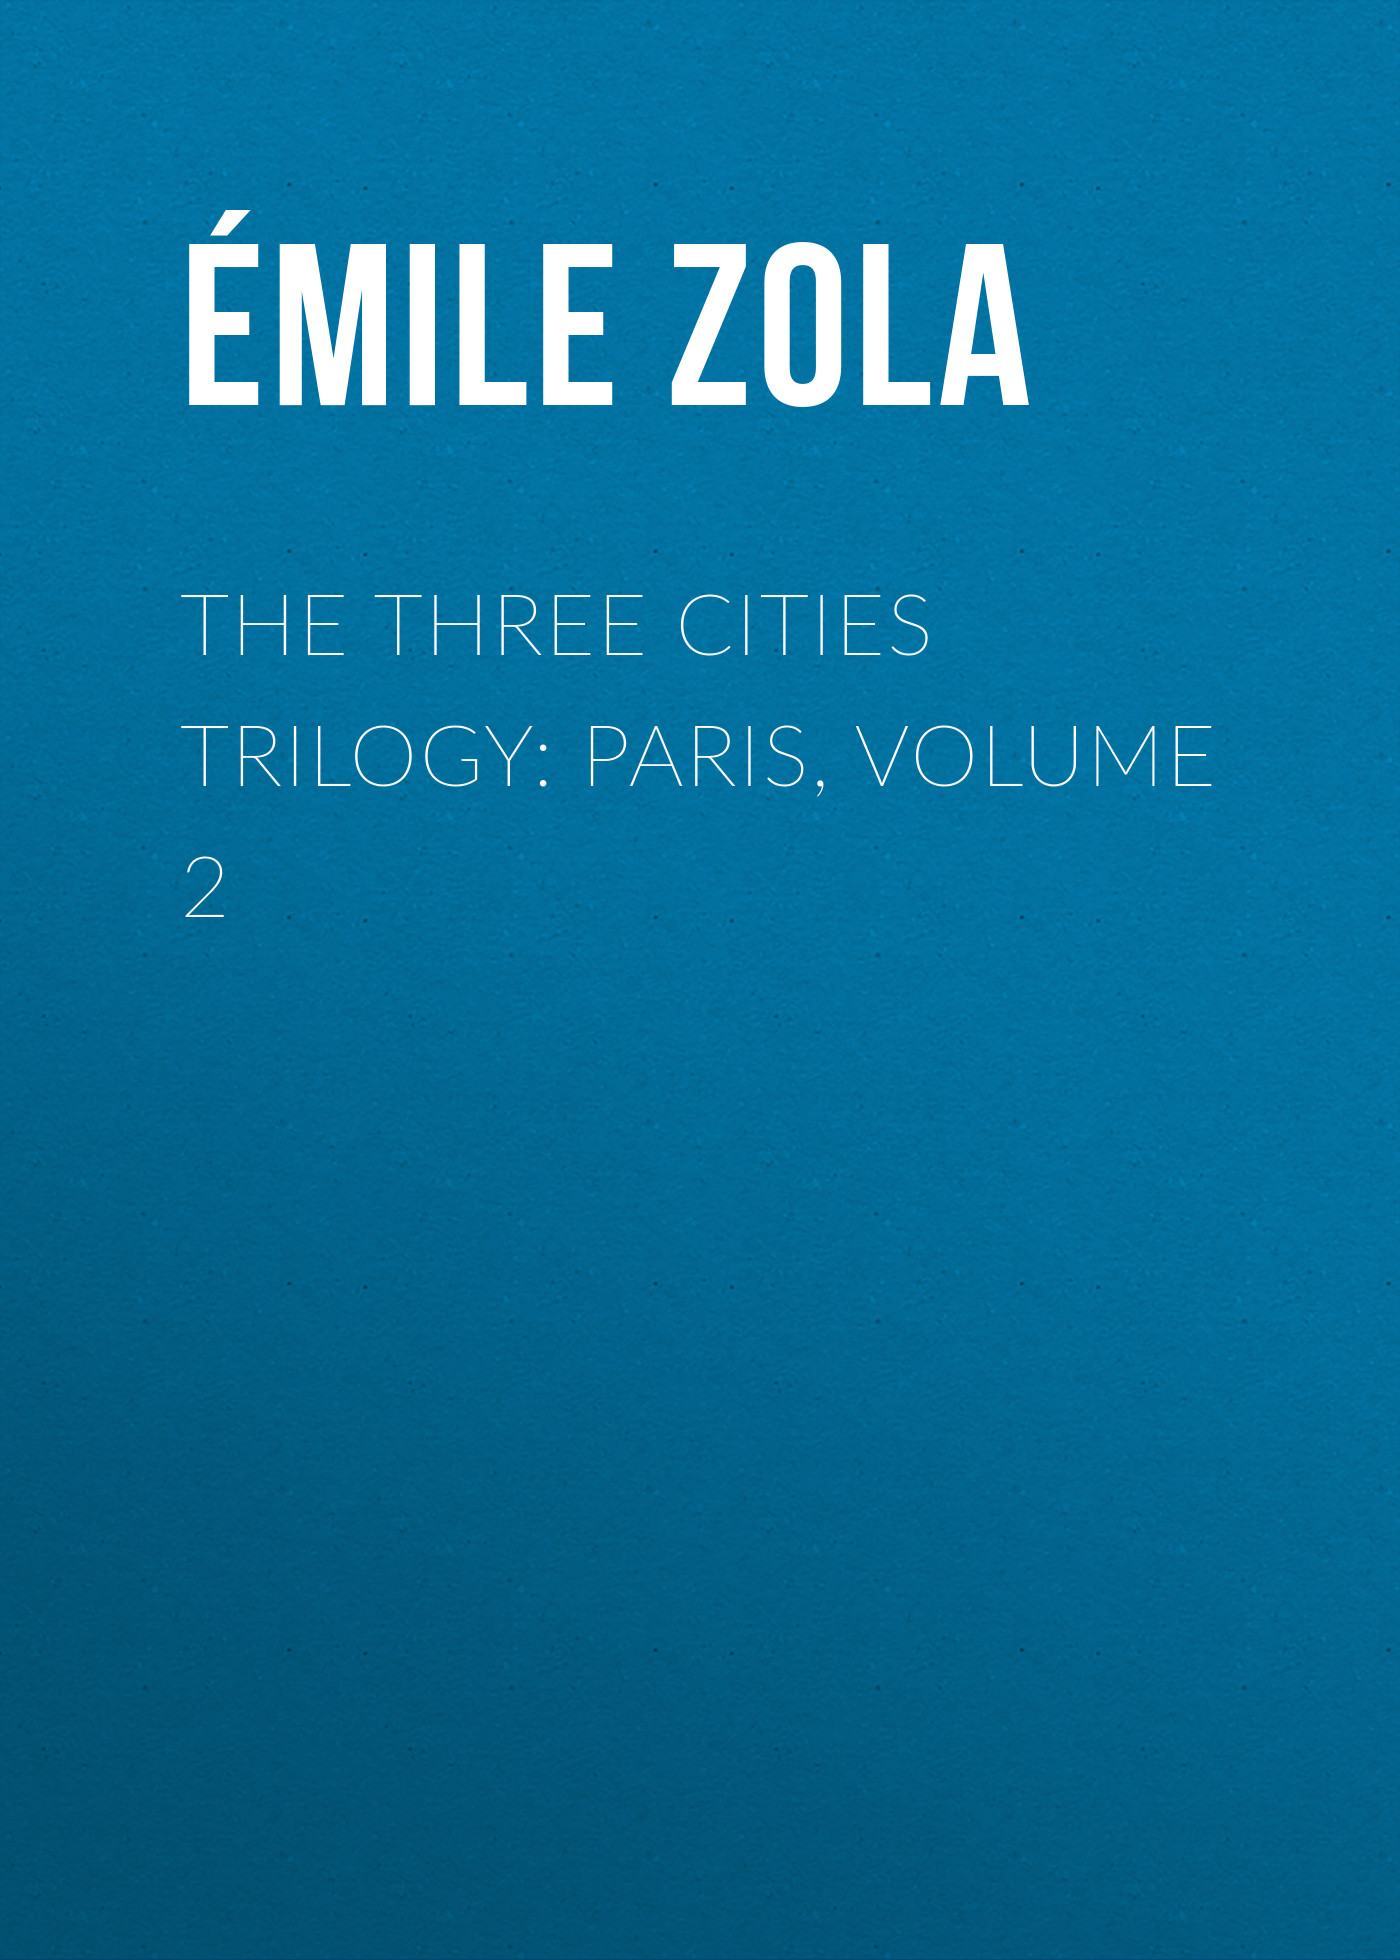 Книга The Three Cities Trilogy: Paris, Volume 2 из серии , созданная Émile Zola, может относится к жанру Литература 19 века, Зарубежная старинная литература, Зарубежная классика. Стоимость электронной книги The Three Cities Trilogy: Paris, Volume 2 с идентификатором 25559588 составляет 0 руб.